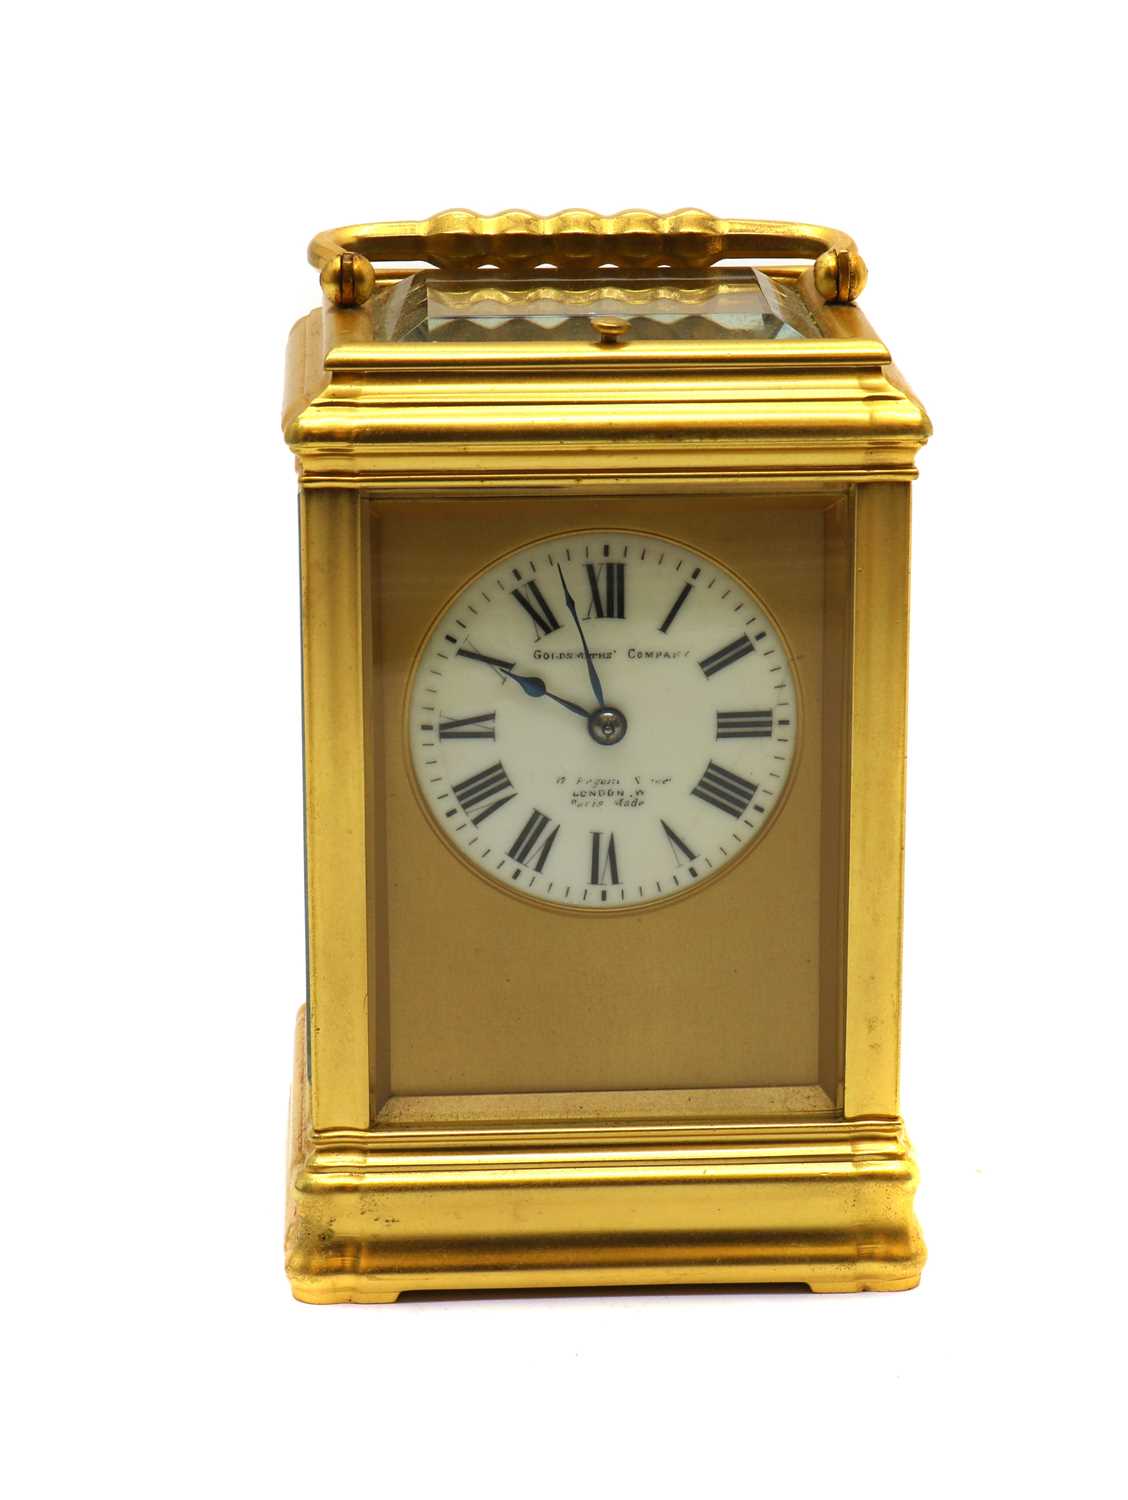 A gilt-brass Grand Sonnerie carriage clock